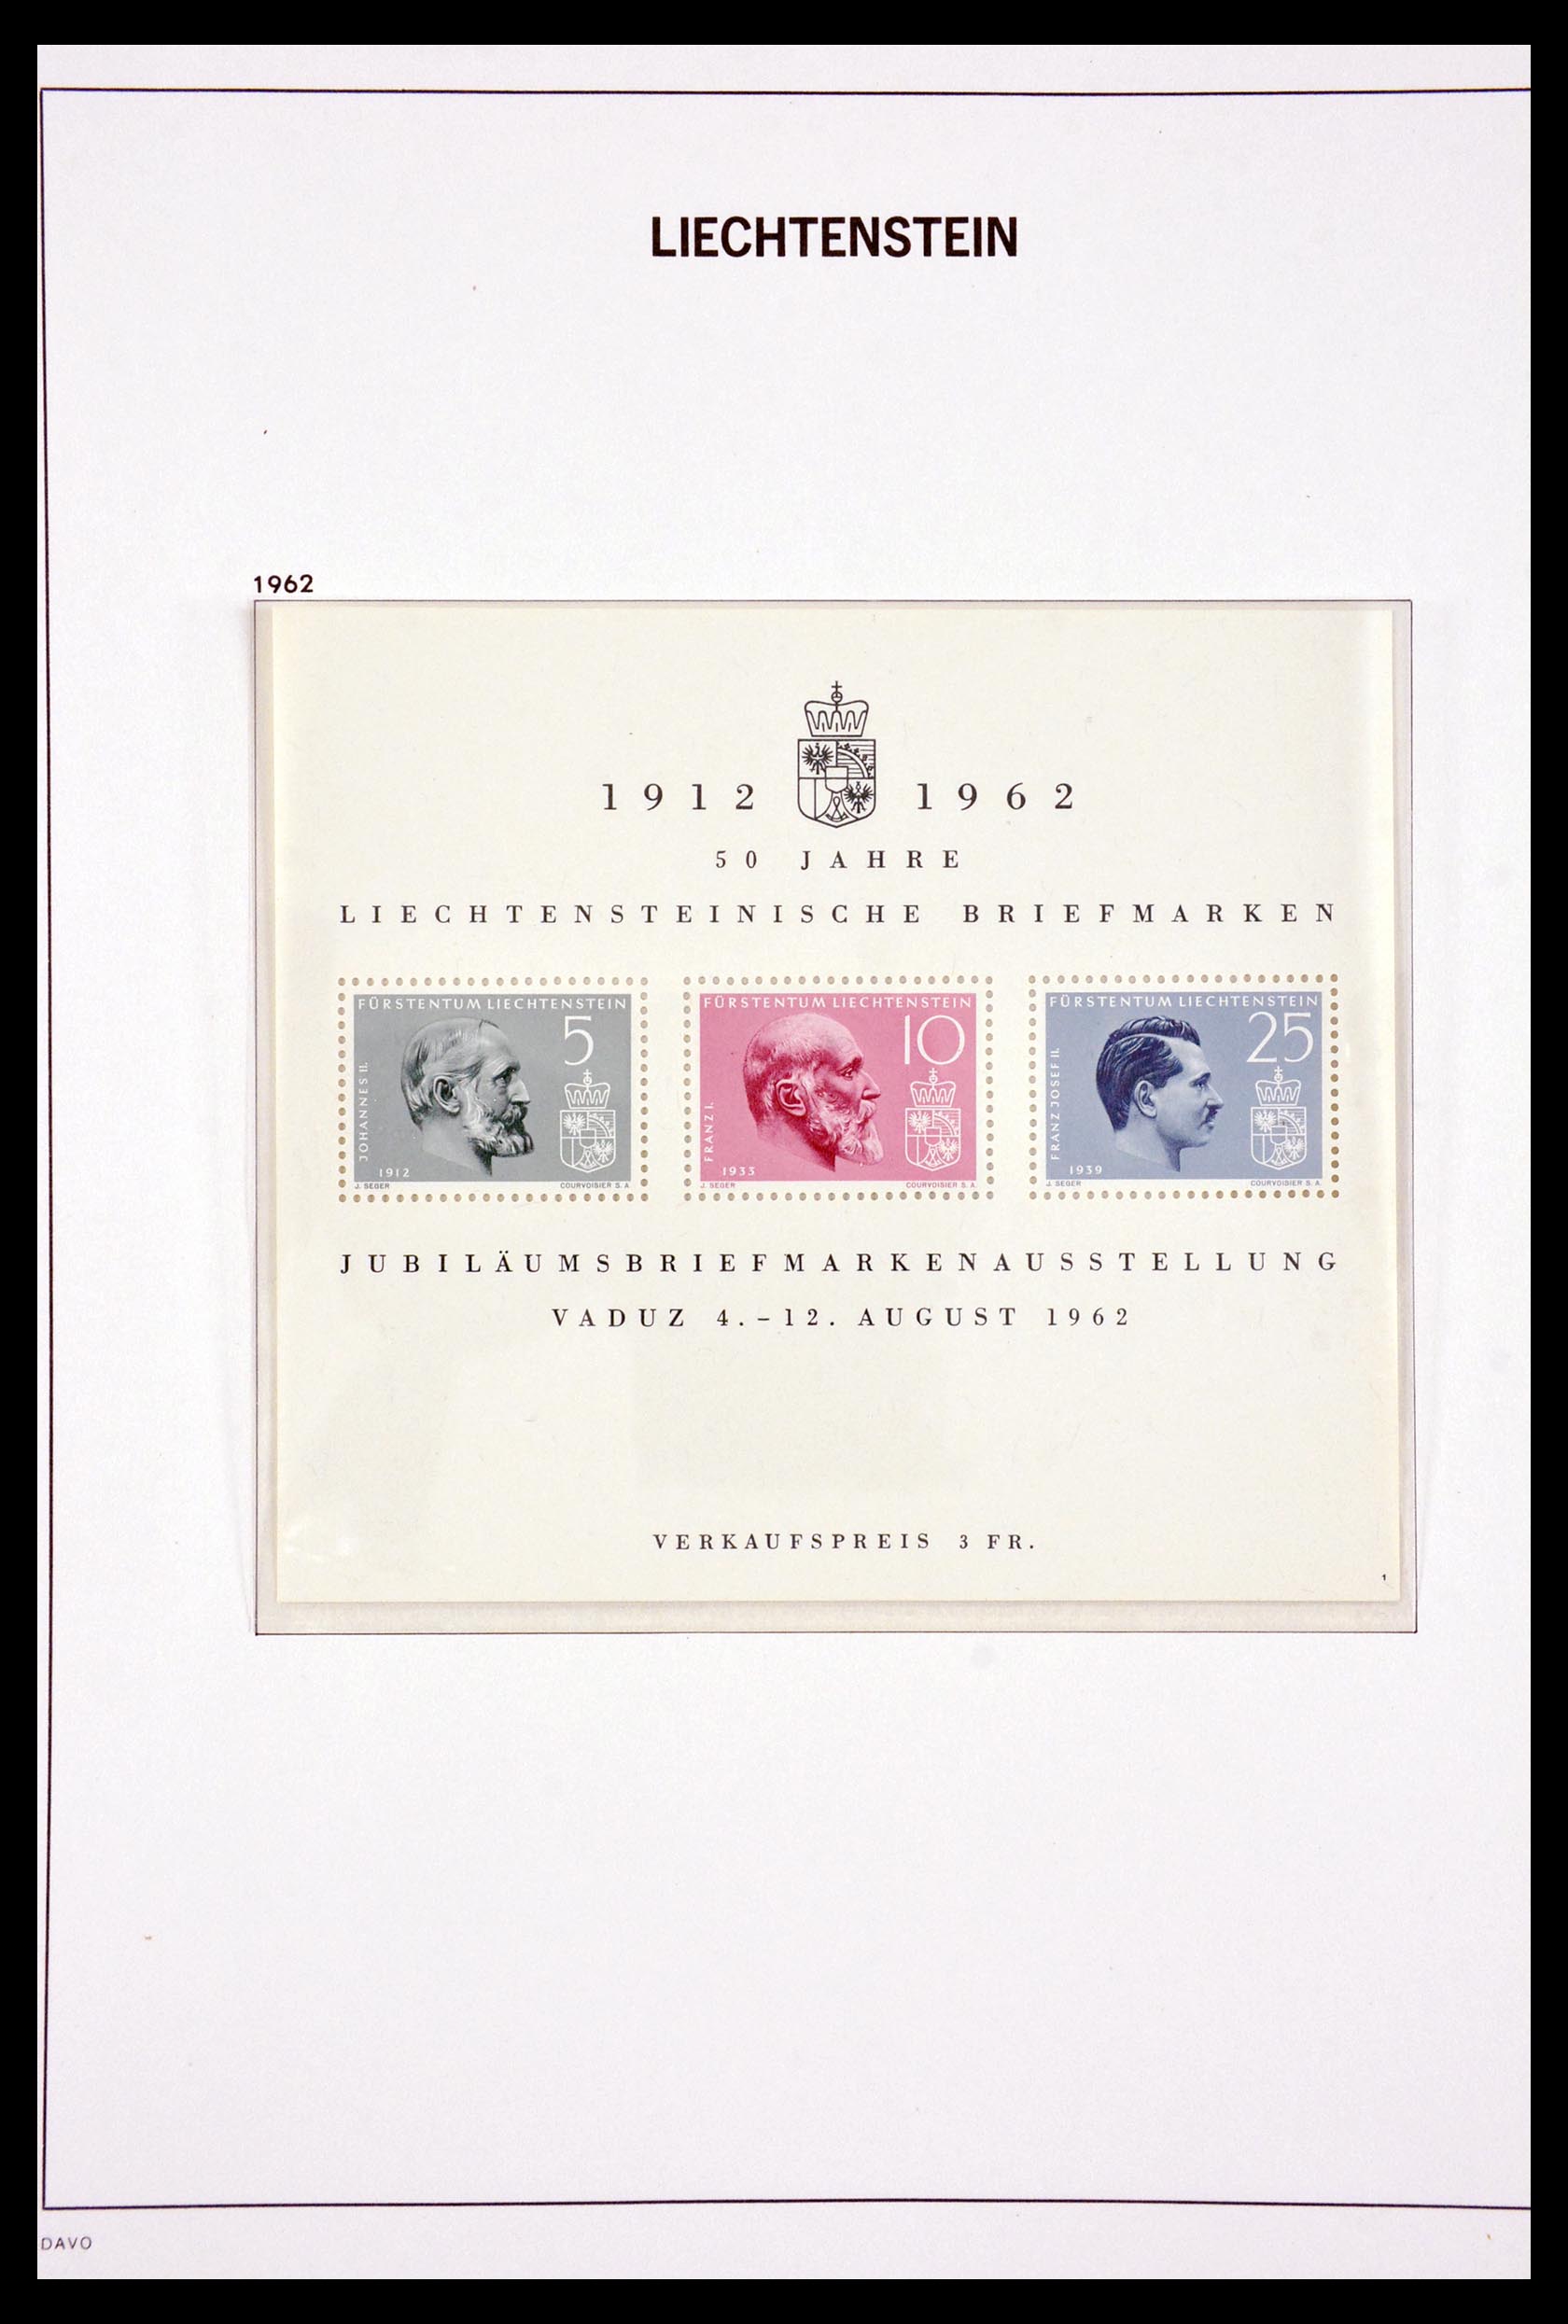 29750 044 - 29750 Liechtenstein 1912-2014.